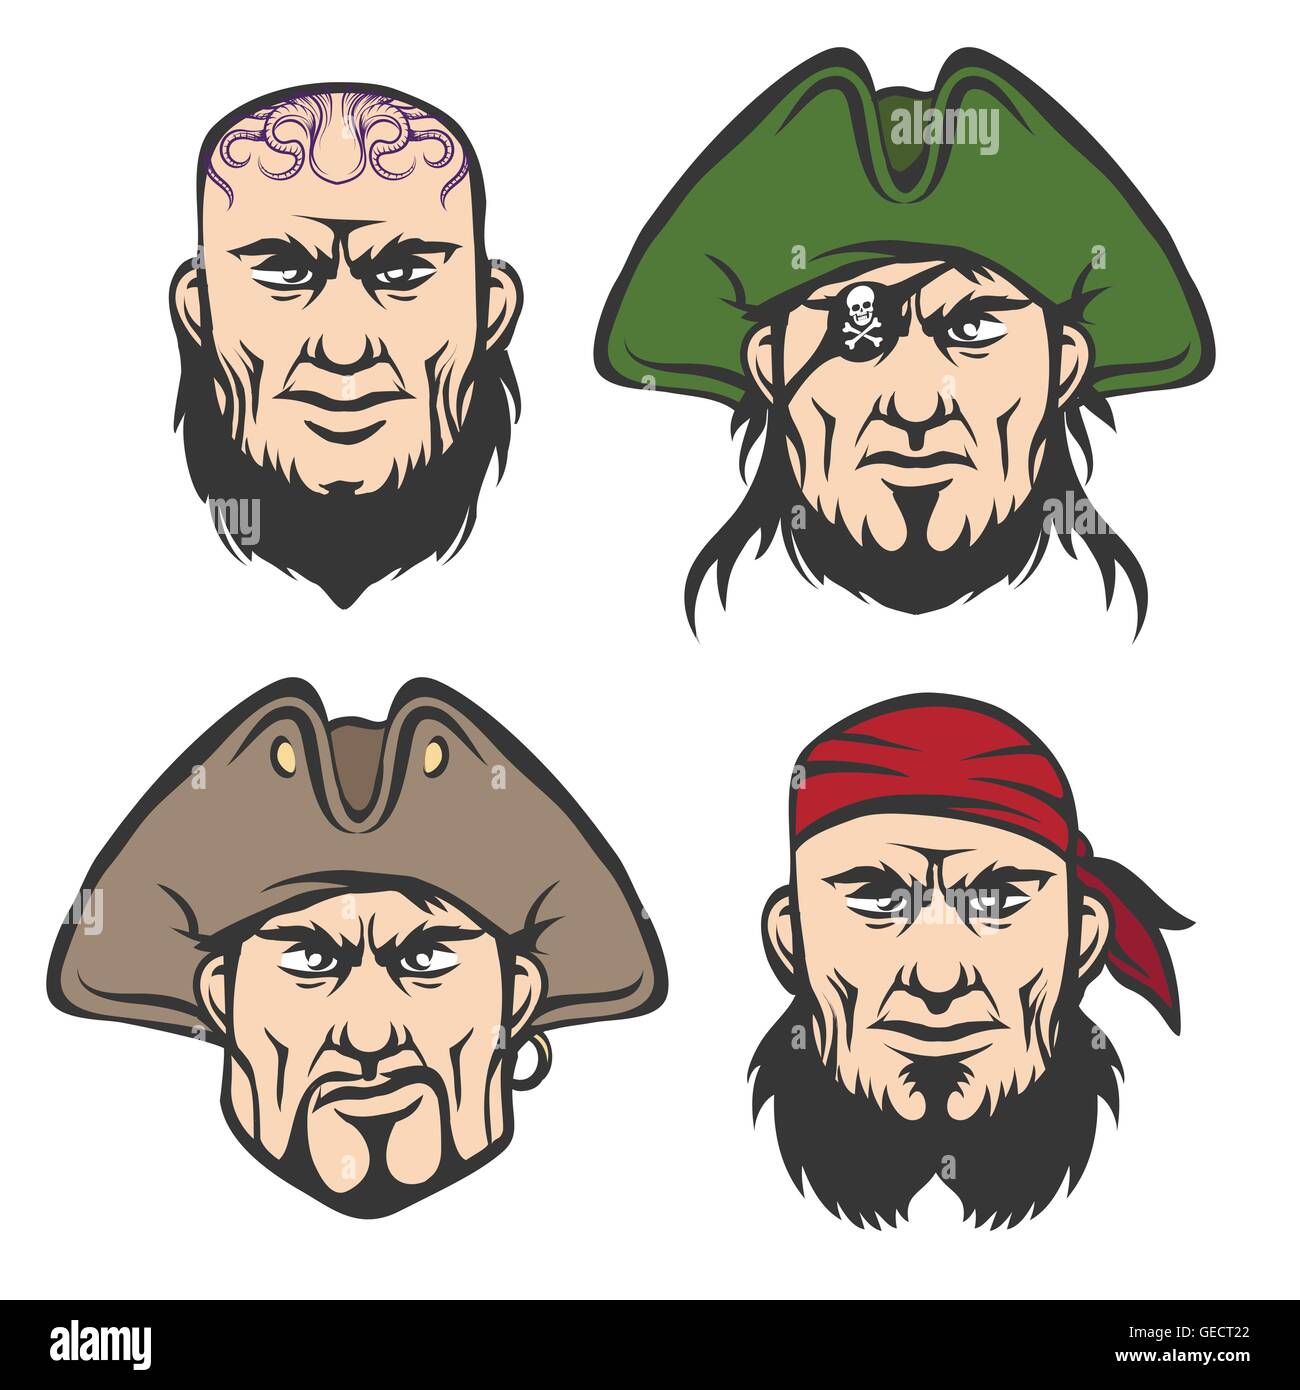 Piraten-Maskottchen Gesichter Set. Cartoon One eyed Kapitän, Bootsmann, Kanone Mann und Schiff Mann im Cartoon-Stil. Isoliert auf weiss. Stock Vektor